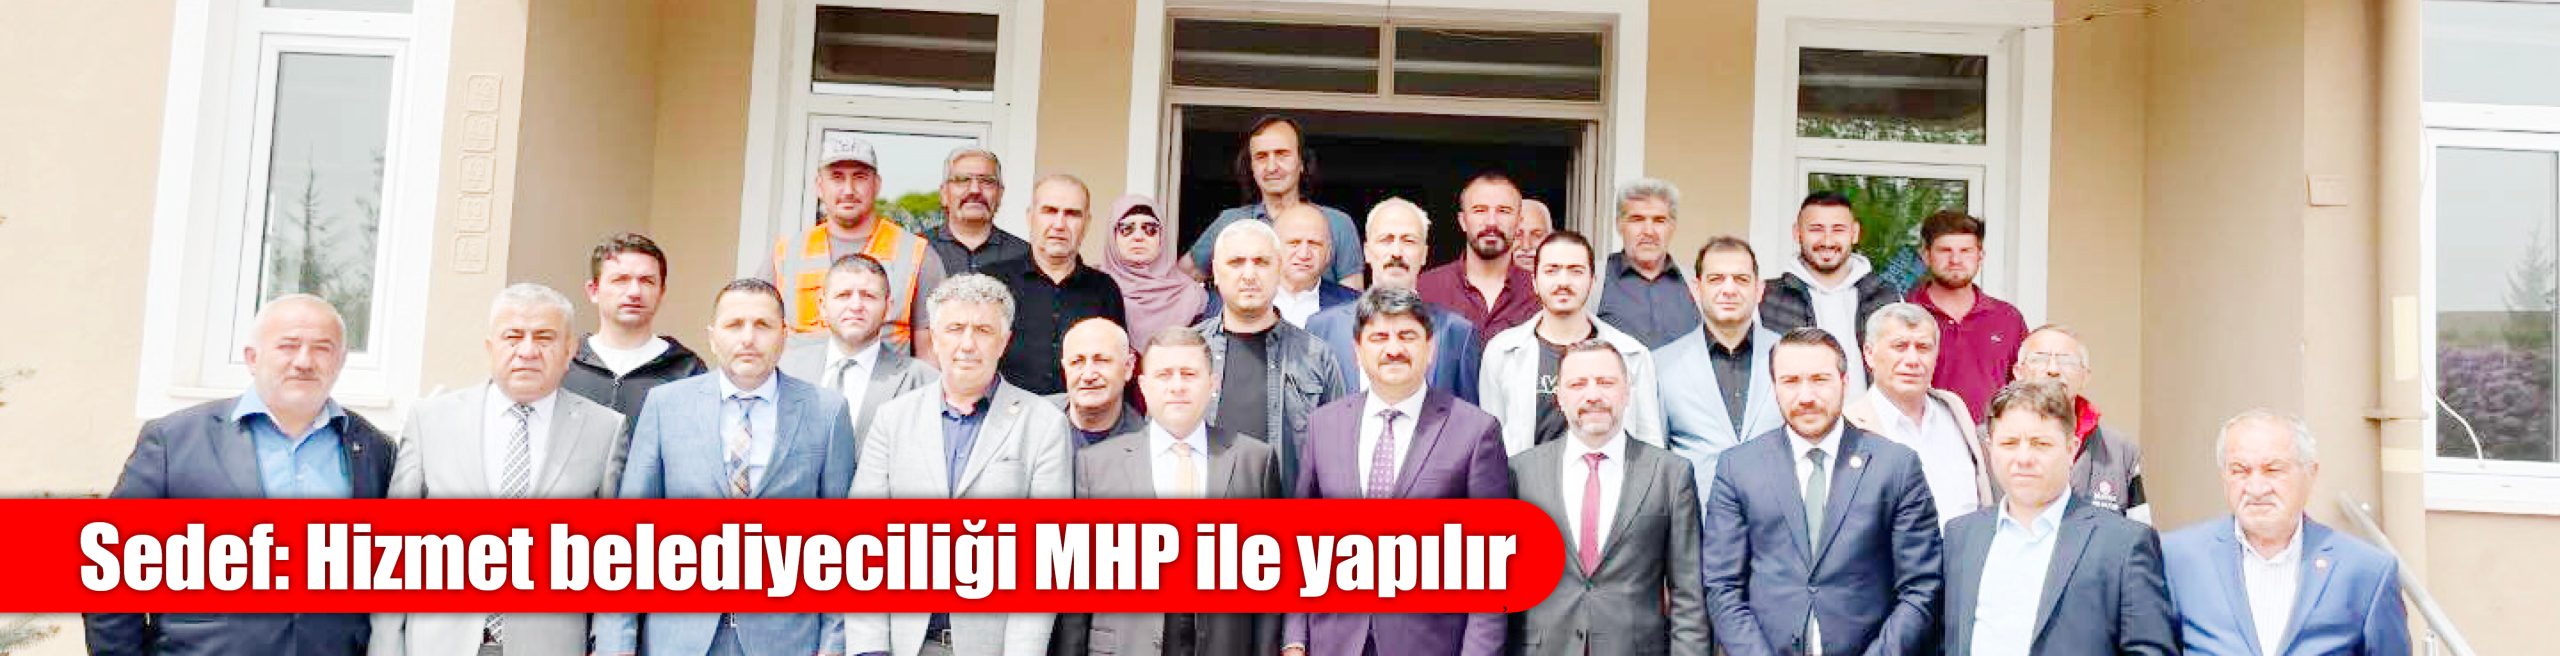 Sedef: Hizmet belediyeciliği MHP ile yapılır